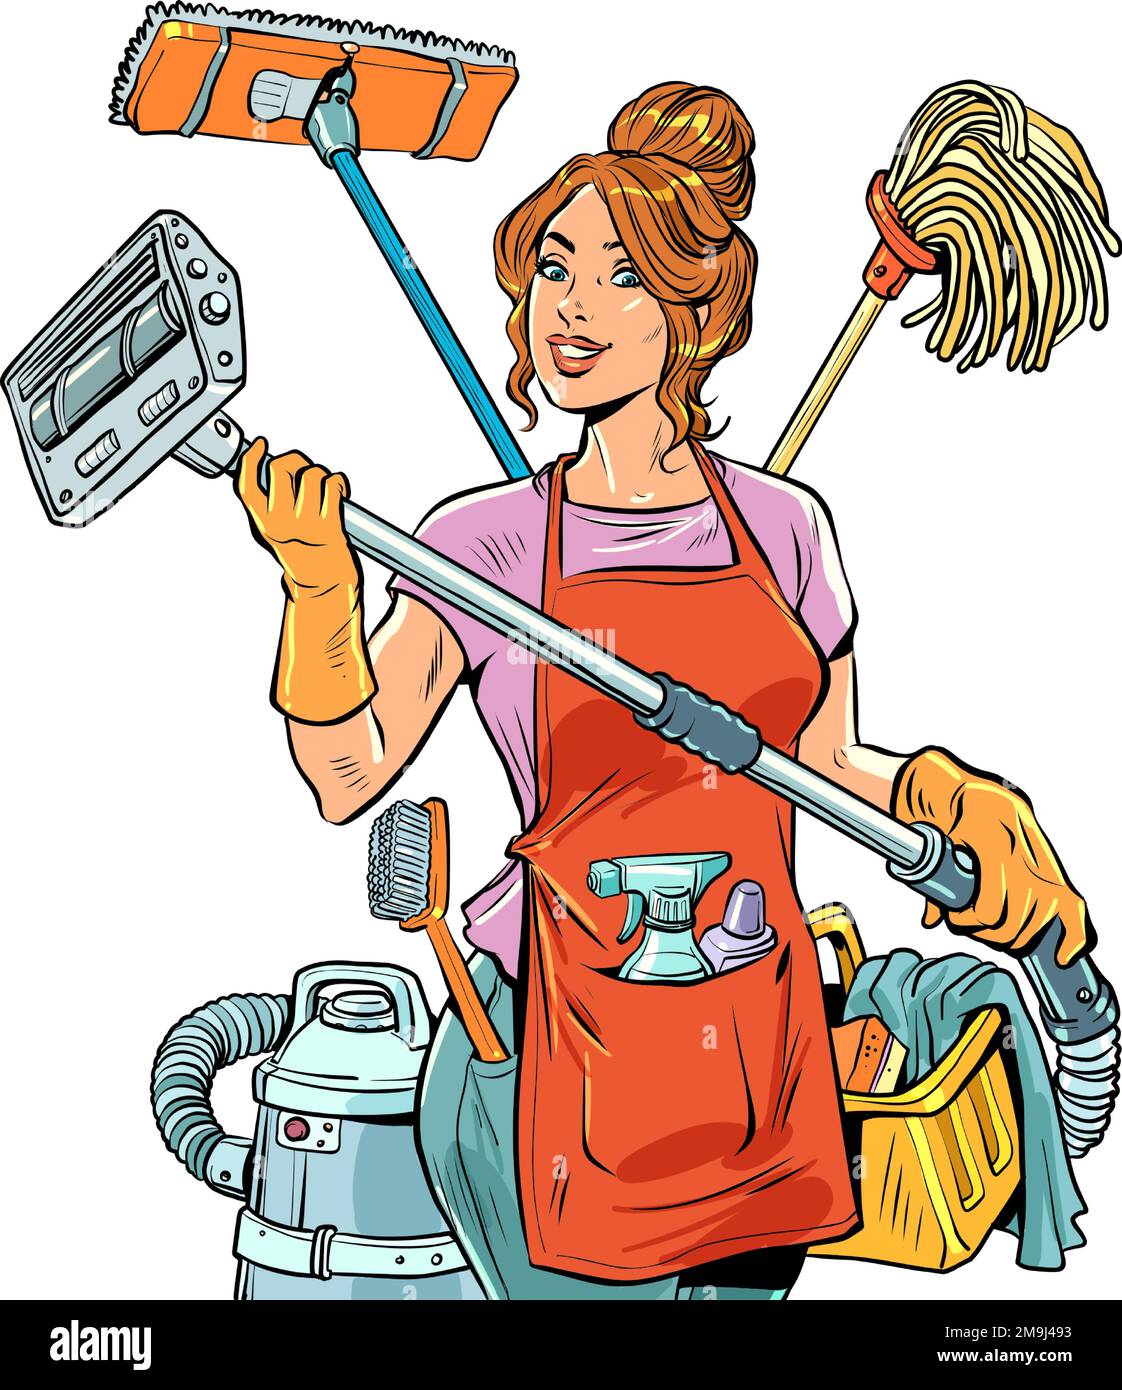 Service de nettoyage Une belle femme de ménage organise le nettoyage et la vie dans sa maison pour toute la famille et elle-même. Travaux ménagers multitâches pour femme Illustration de Vecteur